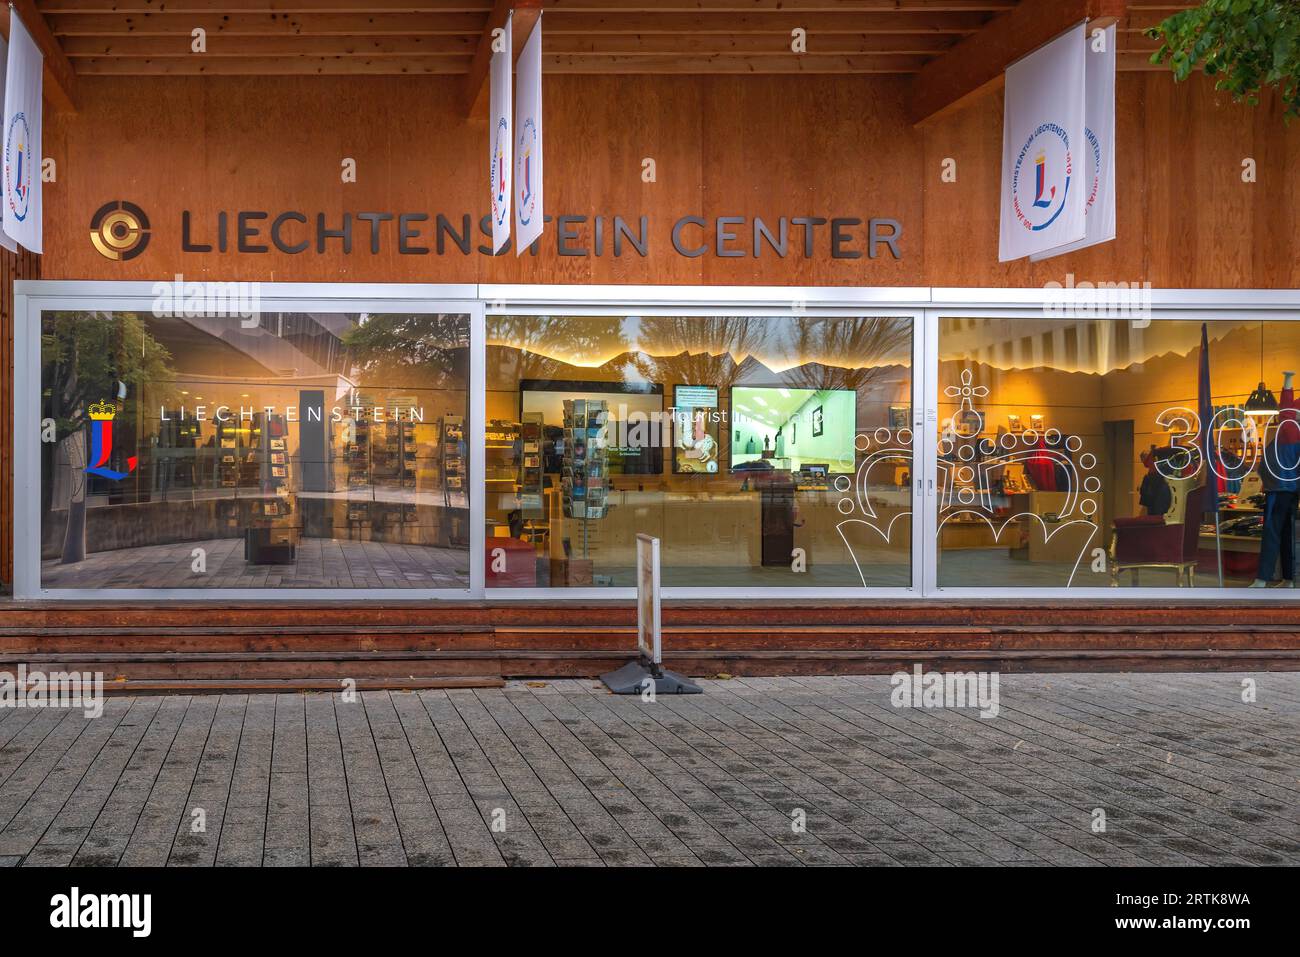 Liechtenstein Center - Visitor Center - Vaduz, Liechtenstein Stock Photo